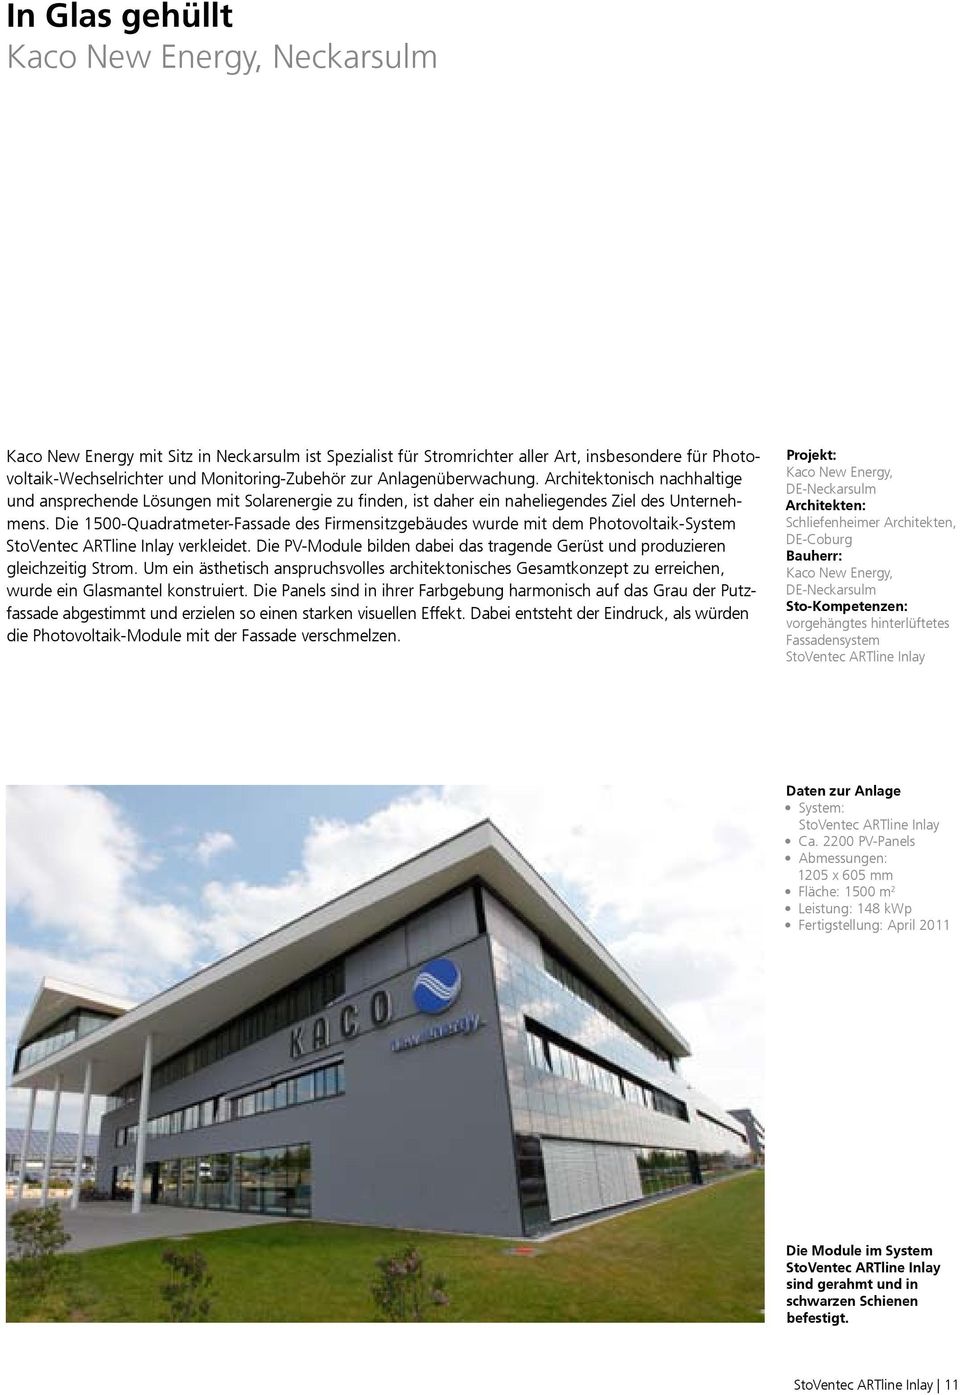 Die 1500-Quadratmeter-Fassade des Firmensitzgebäudes wurde mit dem Photovoltaik-System StoVentec ARTline Inlay verkleidet.